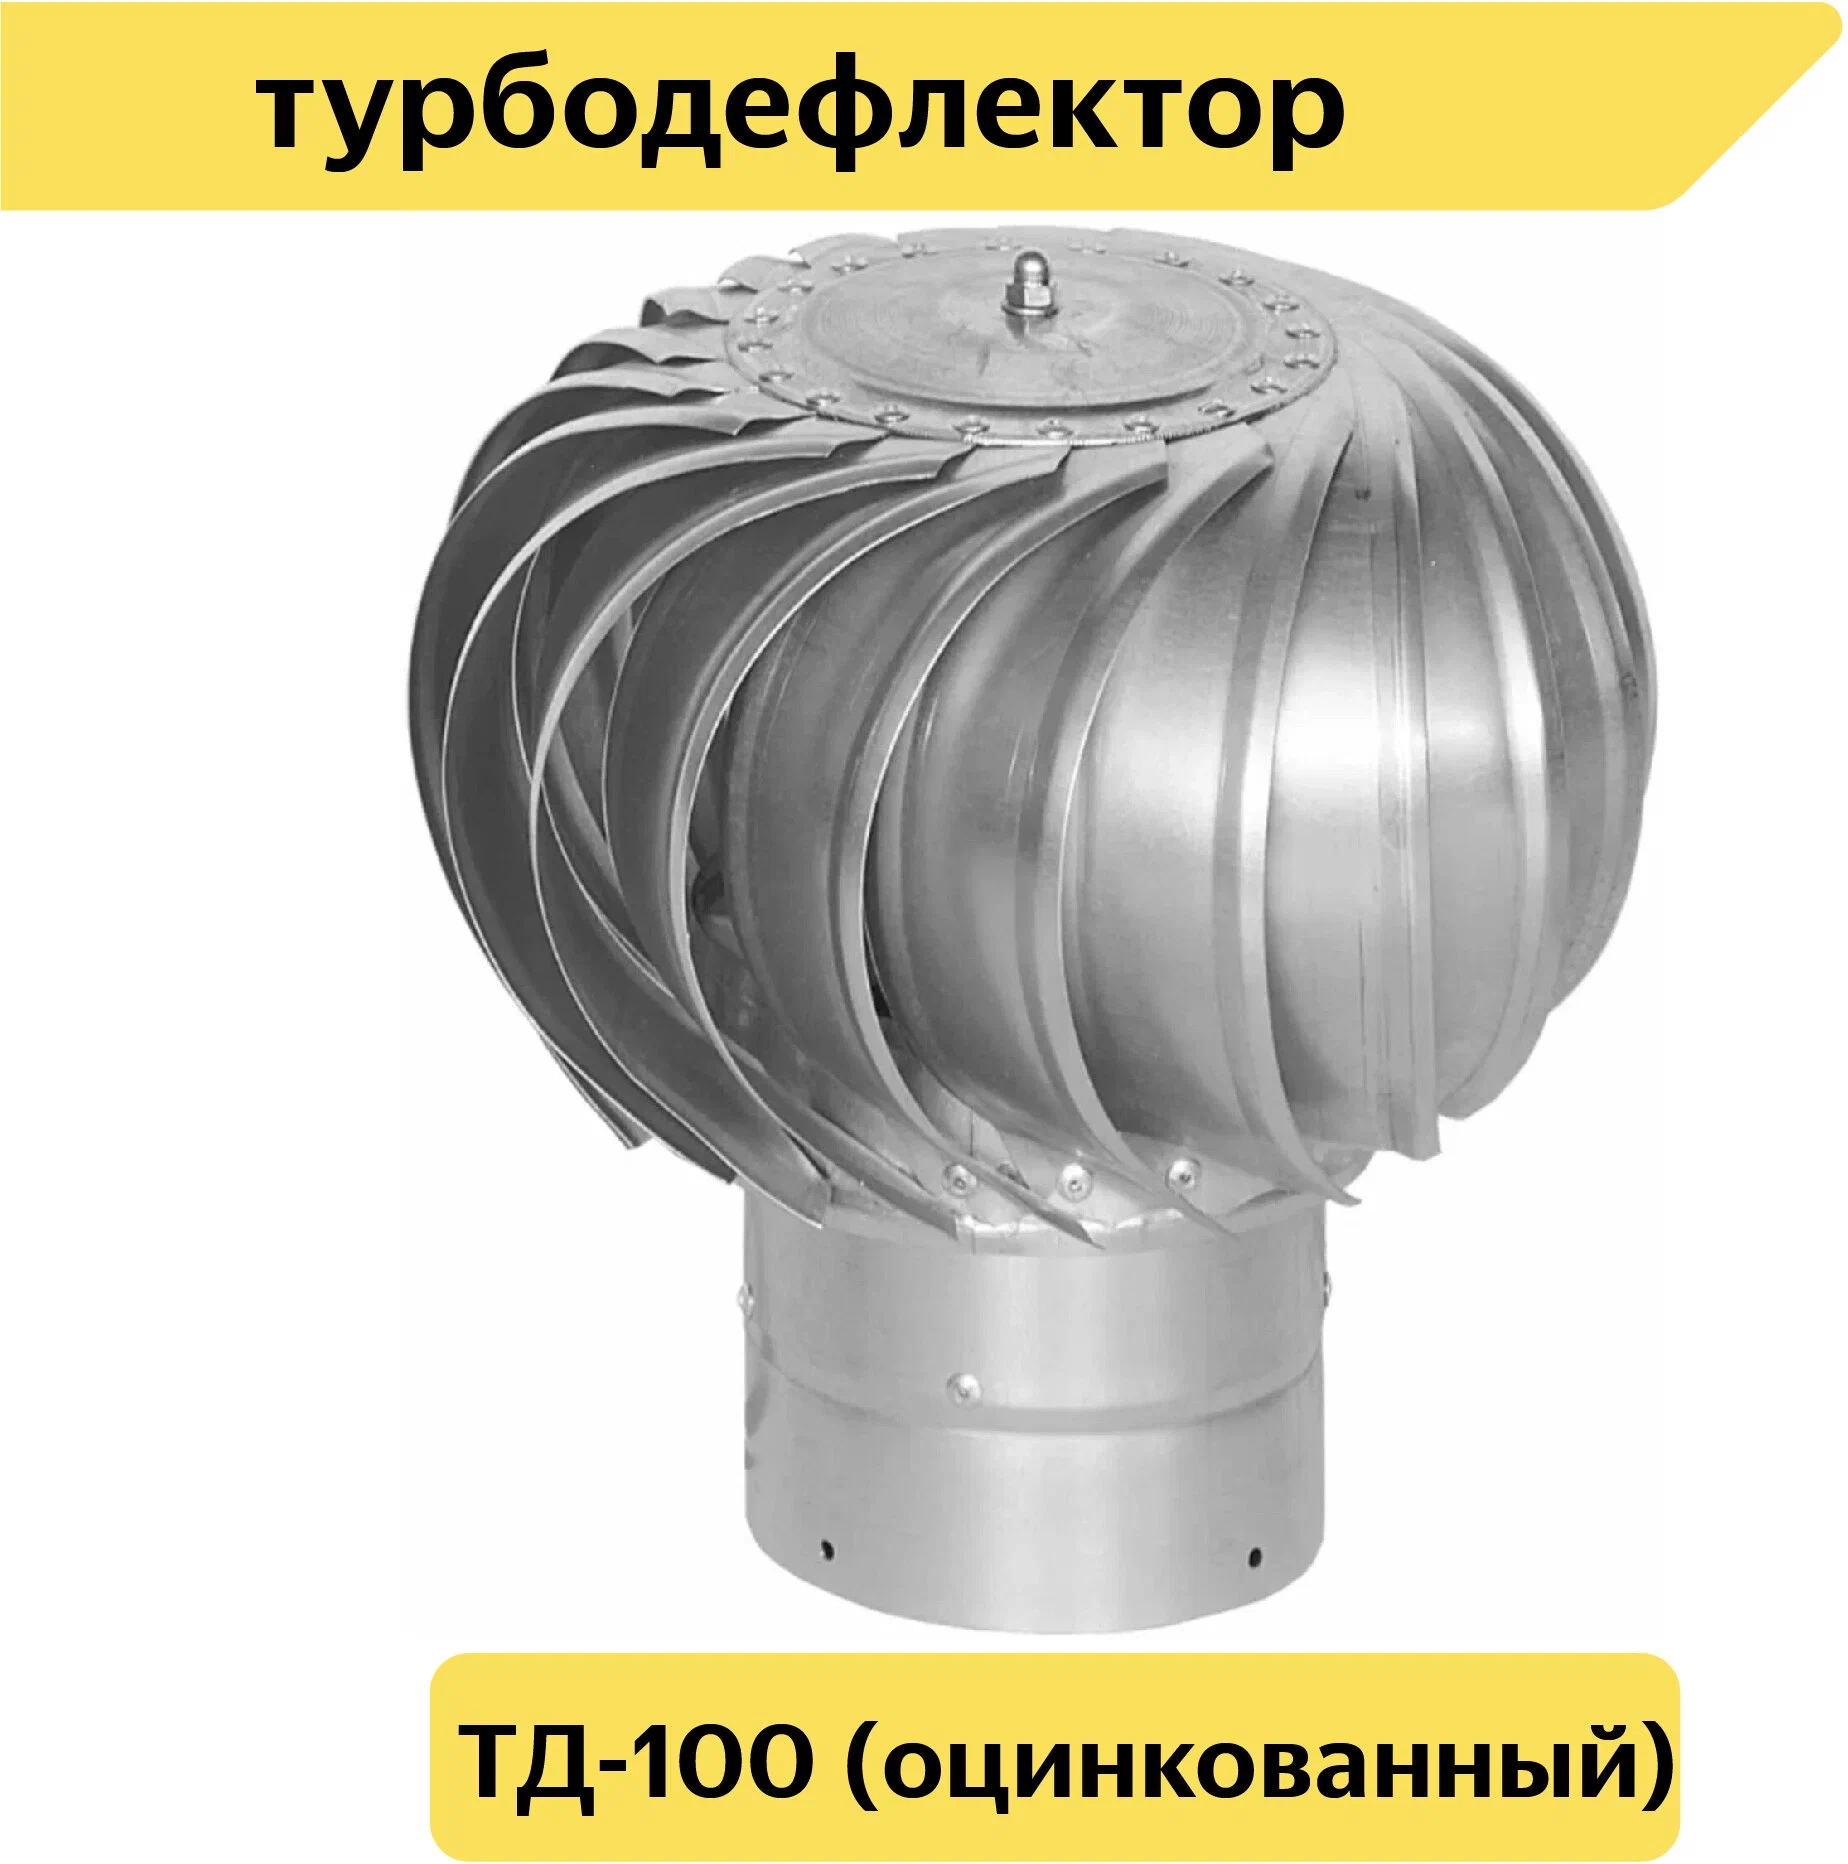 Турбодефлектор TD100, оцинкованный металл